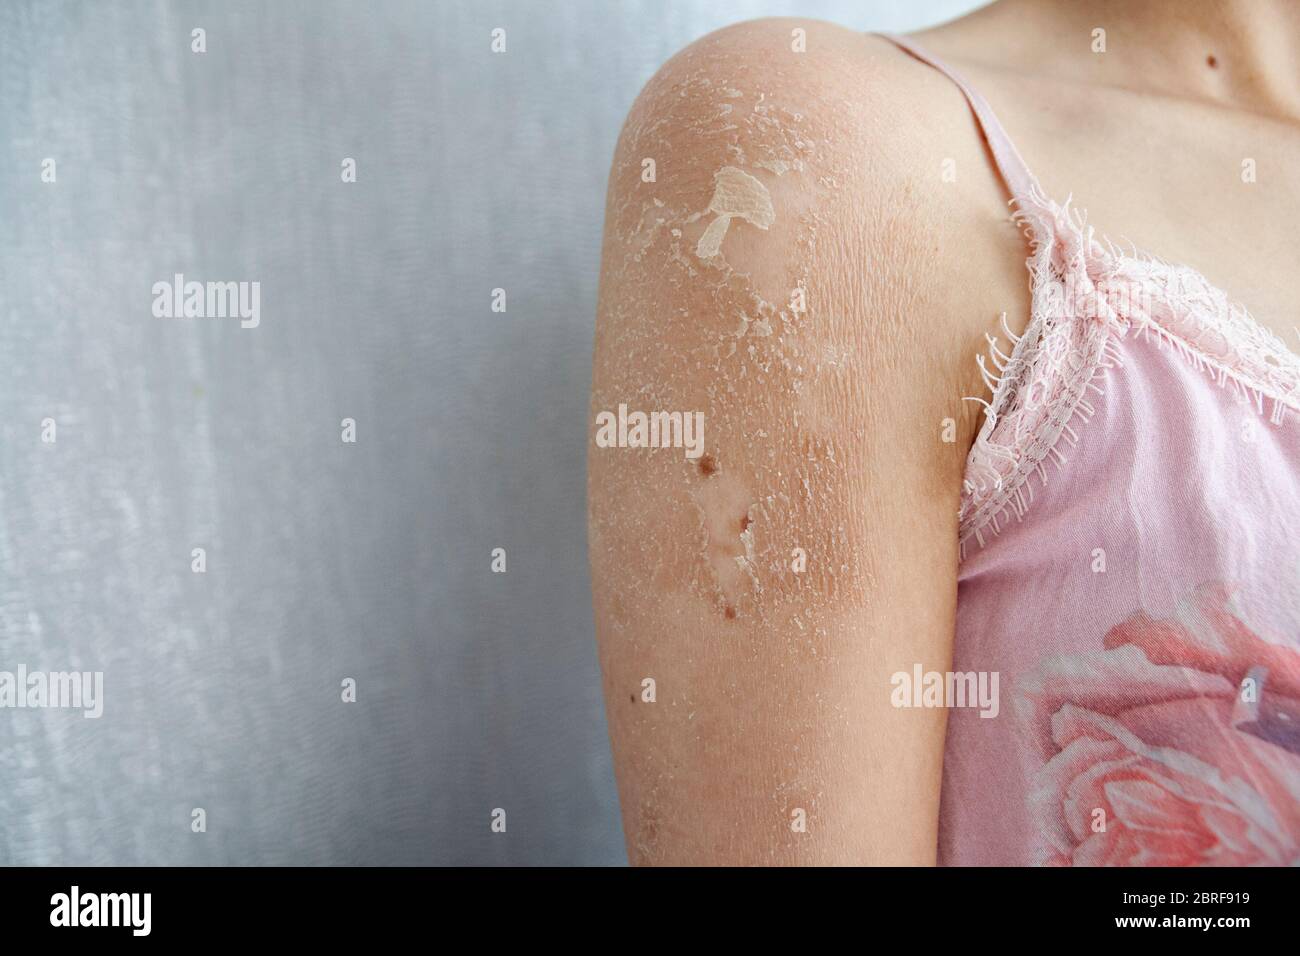 Gros plan de l'eczéma (dermatite), allergie, psoriasis, fongique, peau sèche ou brûlée. Gros plan de l'épaule de la femme. Concept de soins de santé. Banque D'Images